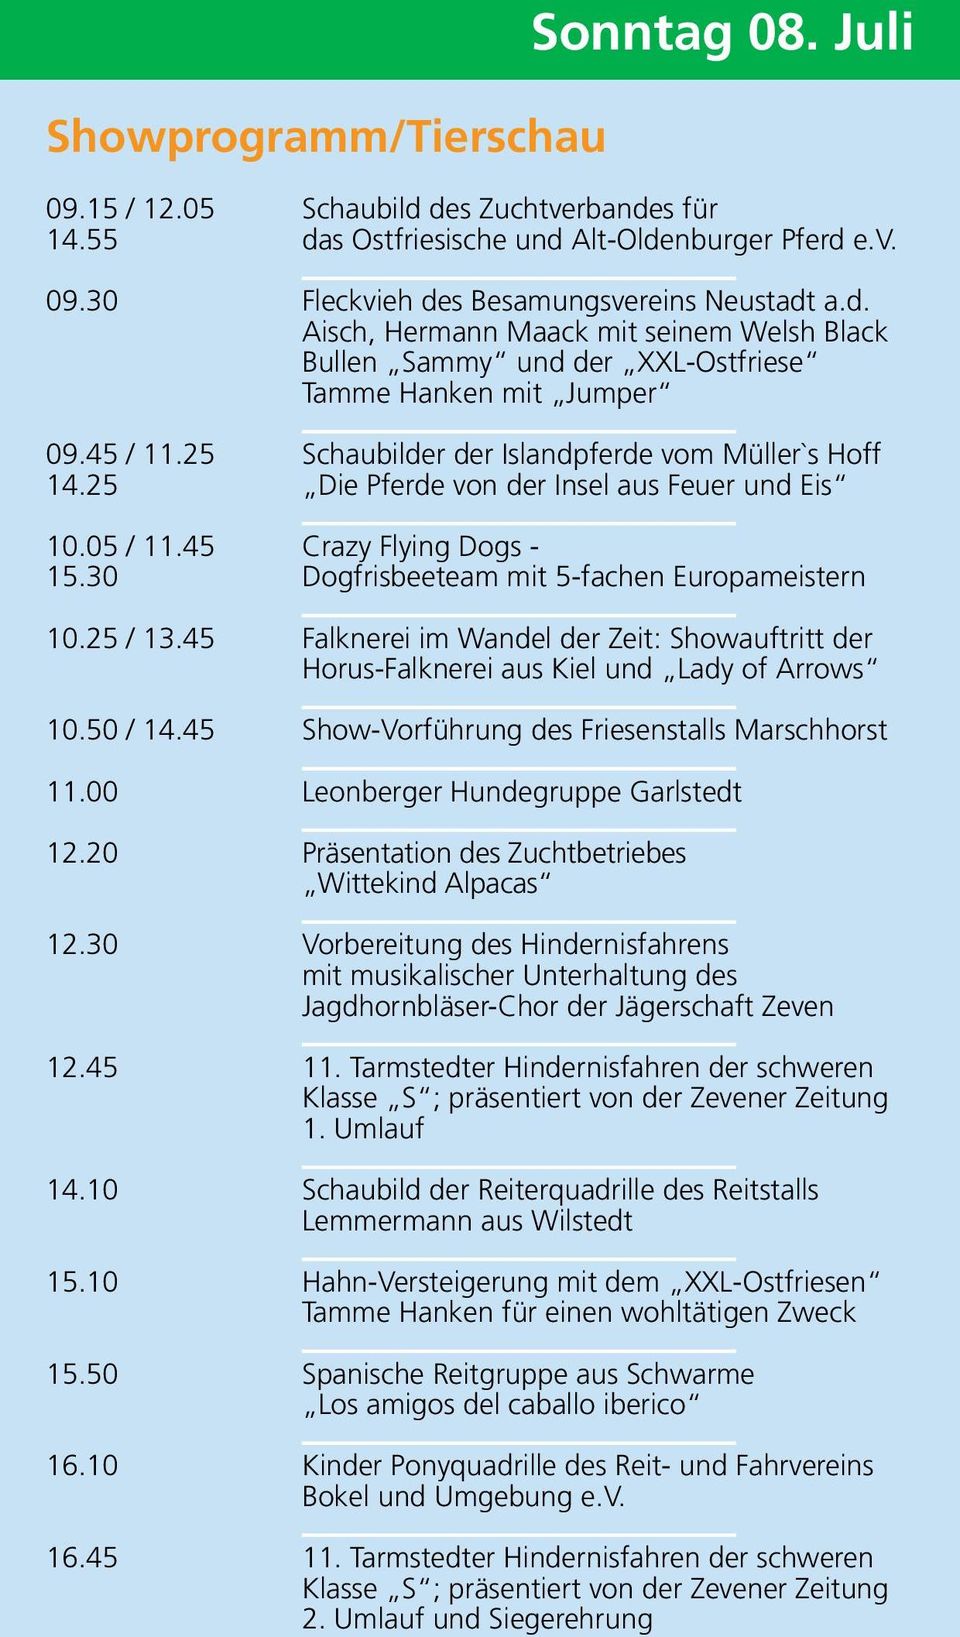 25 / 13.45 Falknerei im Wandel der Zeit: Showauftritt der Horus-Falknerei aus Kiel und Lady of Arrows 10.50 / 14.45 Show-Vorführung des Friesenstalls Marschhorst 11.